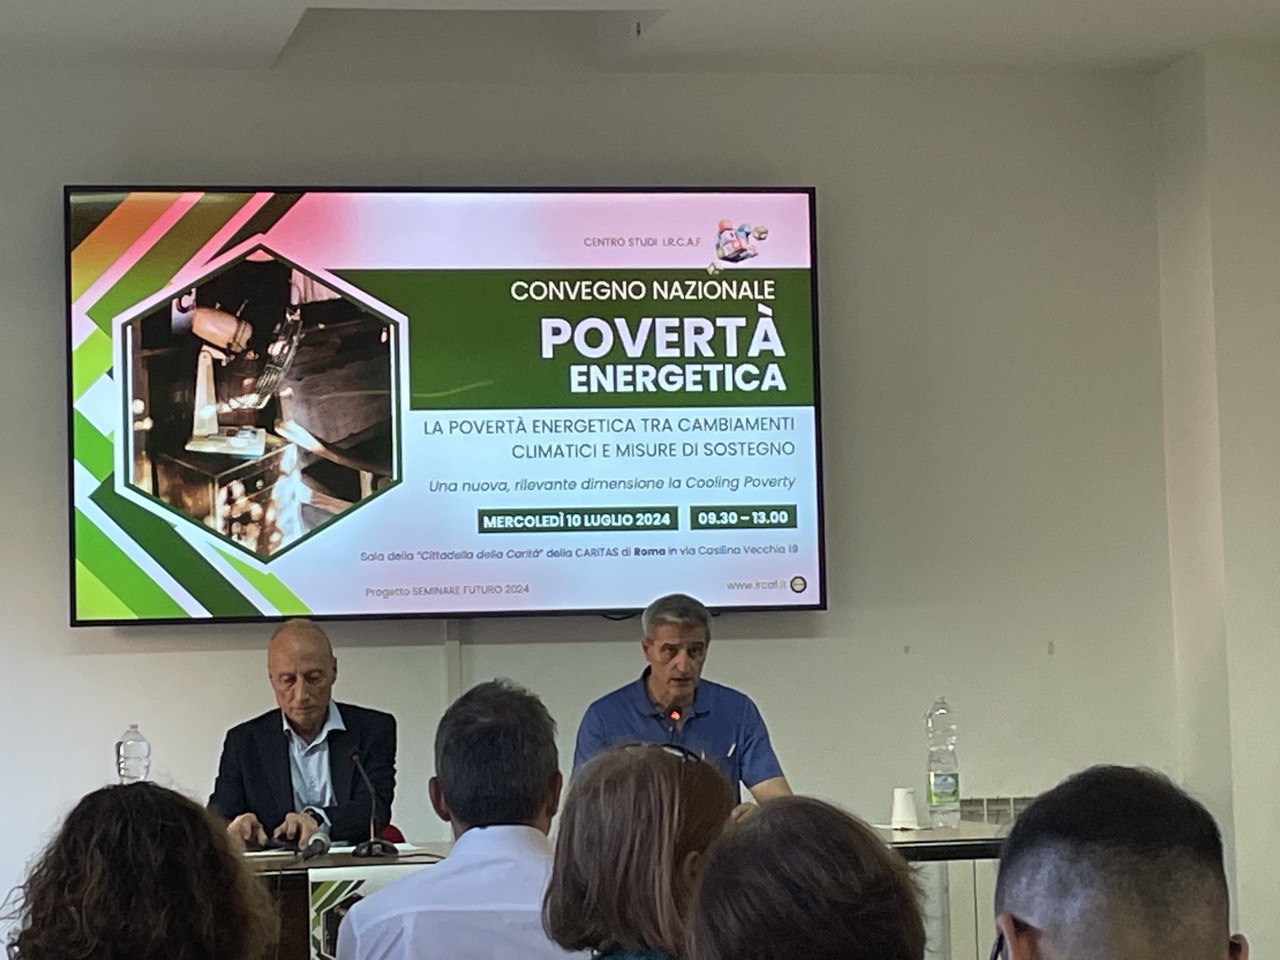 "Per noi trattare la povertà energetica è una questione di carità politica" sottolinea Giustino Trincia direttore Caritas Roma